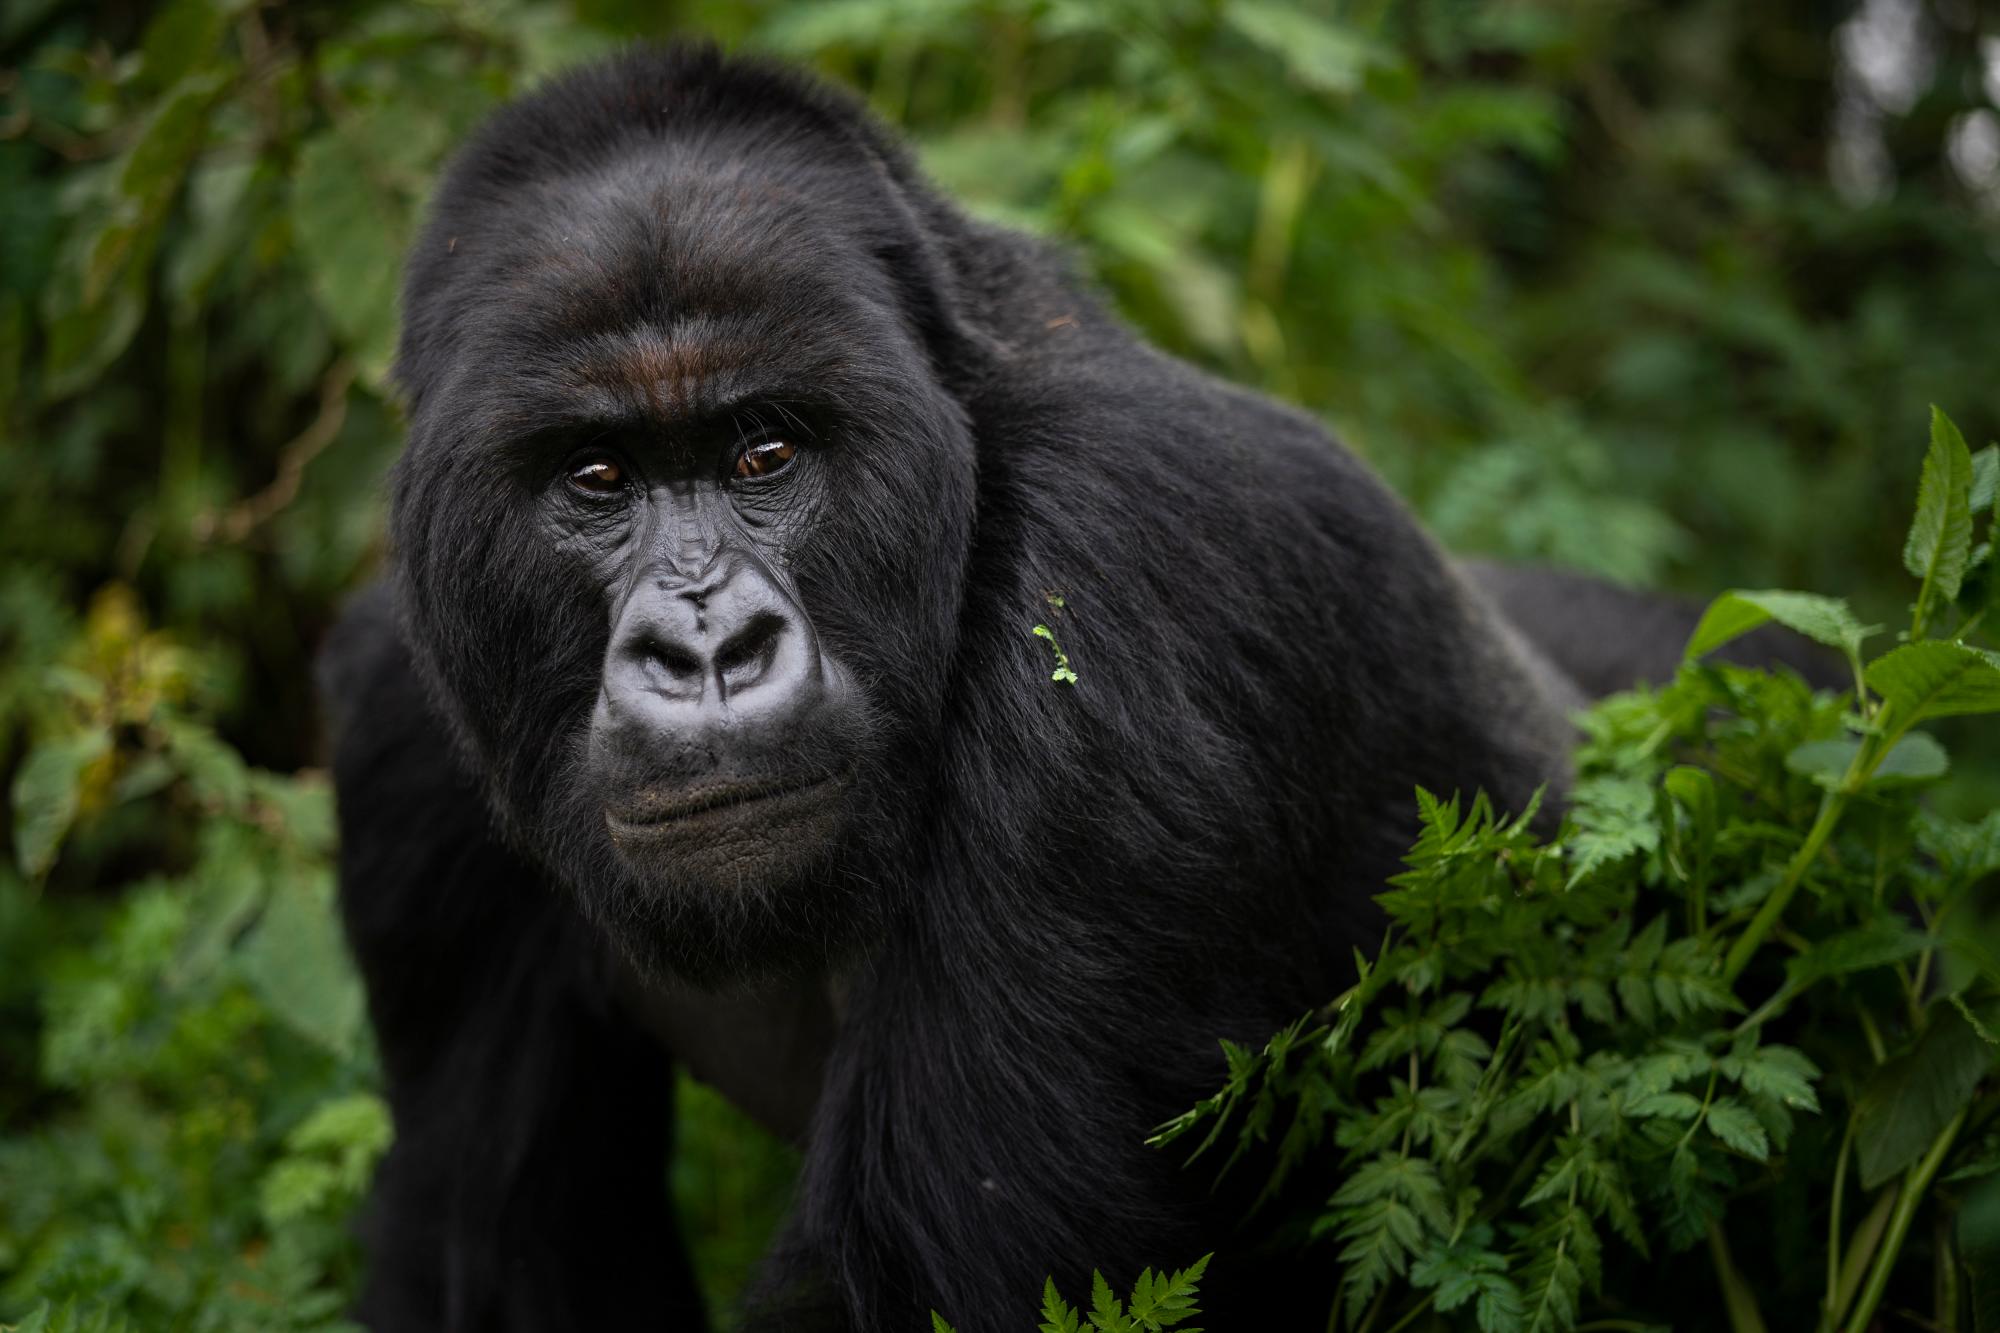 En esta foto del 2 de septiembre de 2019, un gorila de montaña de espalda plateada llamado Segasira camina en el Parque Nacional de los Volcanes, Ruanda. Una campaña de conservación concertada y sostenida ha evitado lo peor y ha dado una segunda oportunidad a estos grandes simios, que comparten aproximadamente el 98% del ADN humano. 